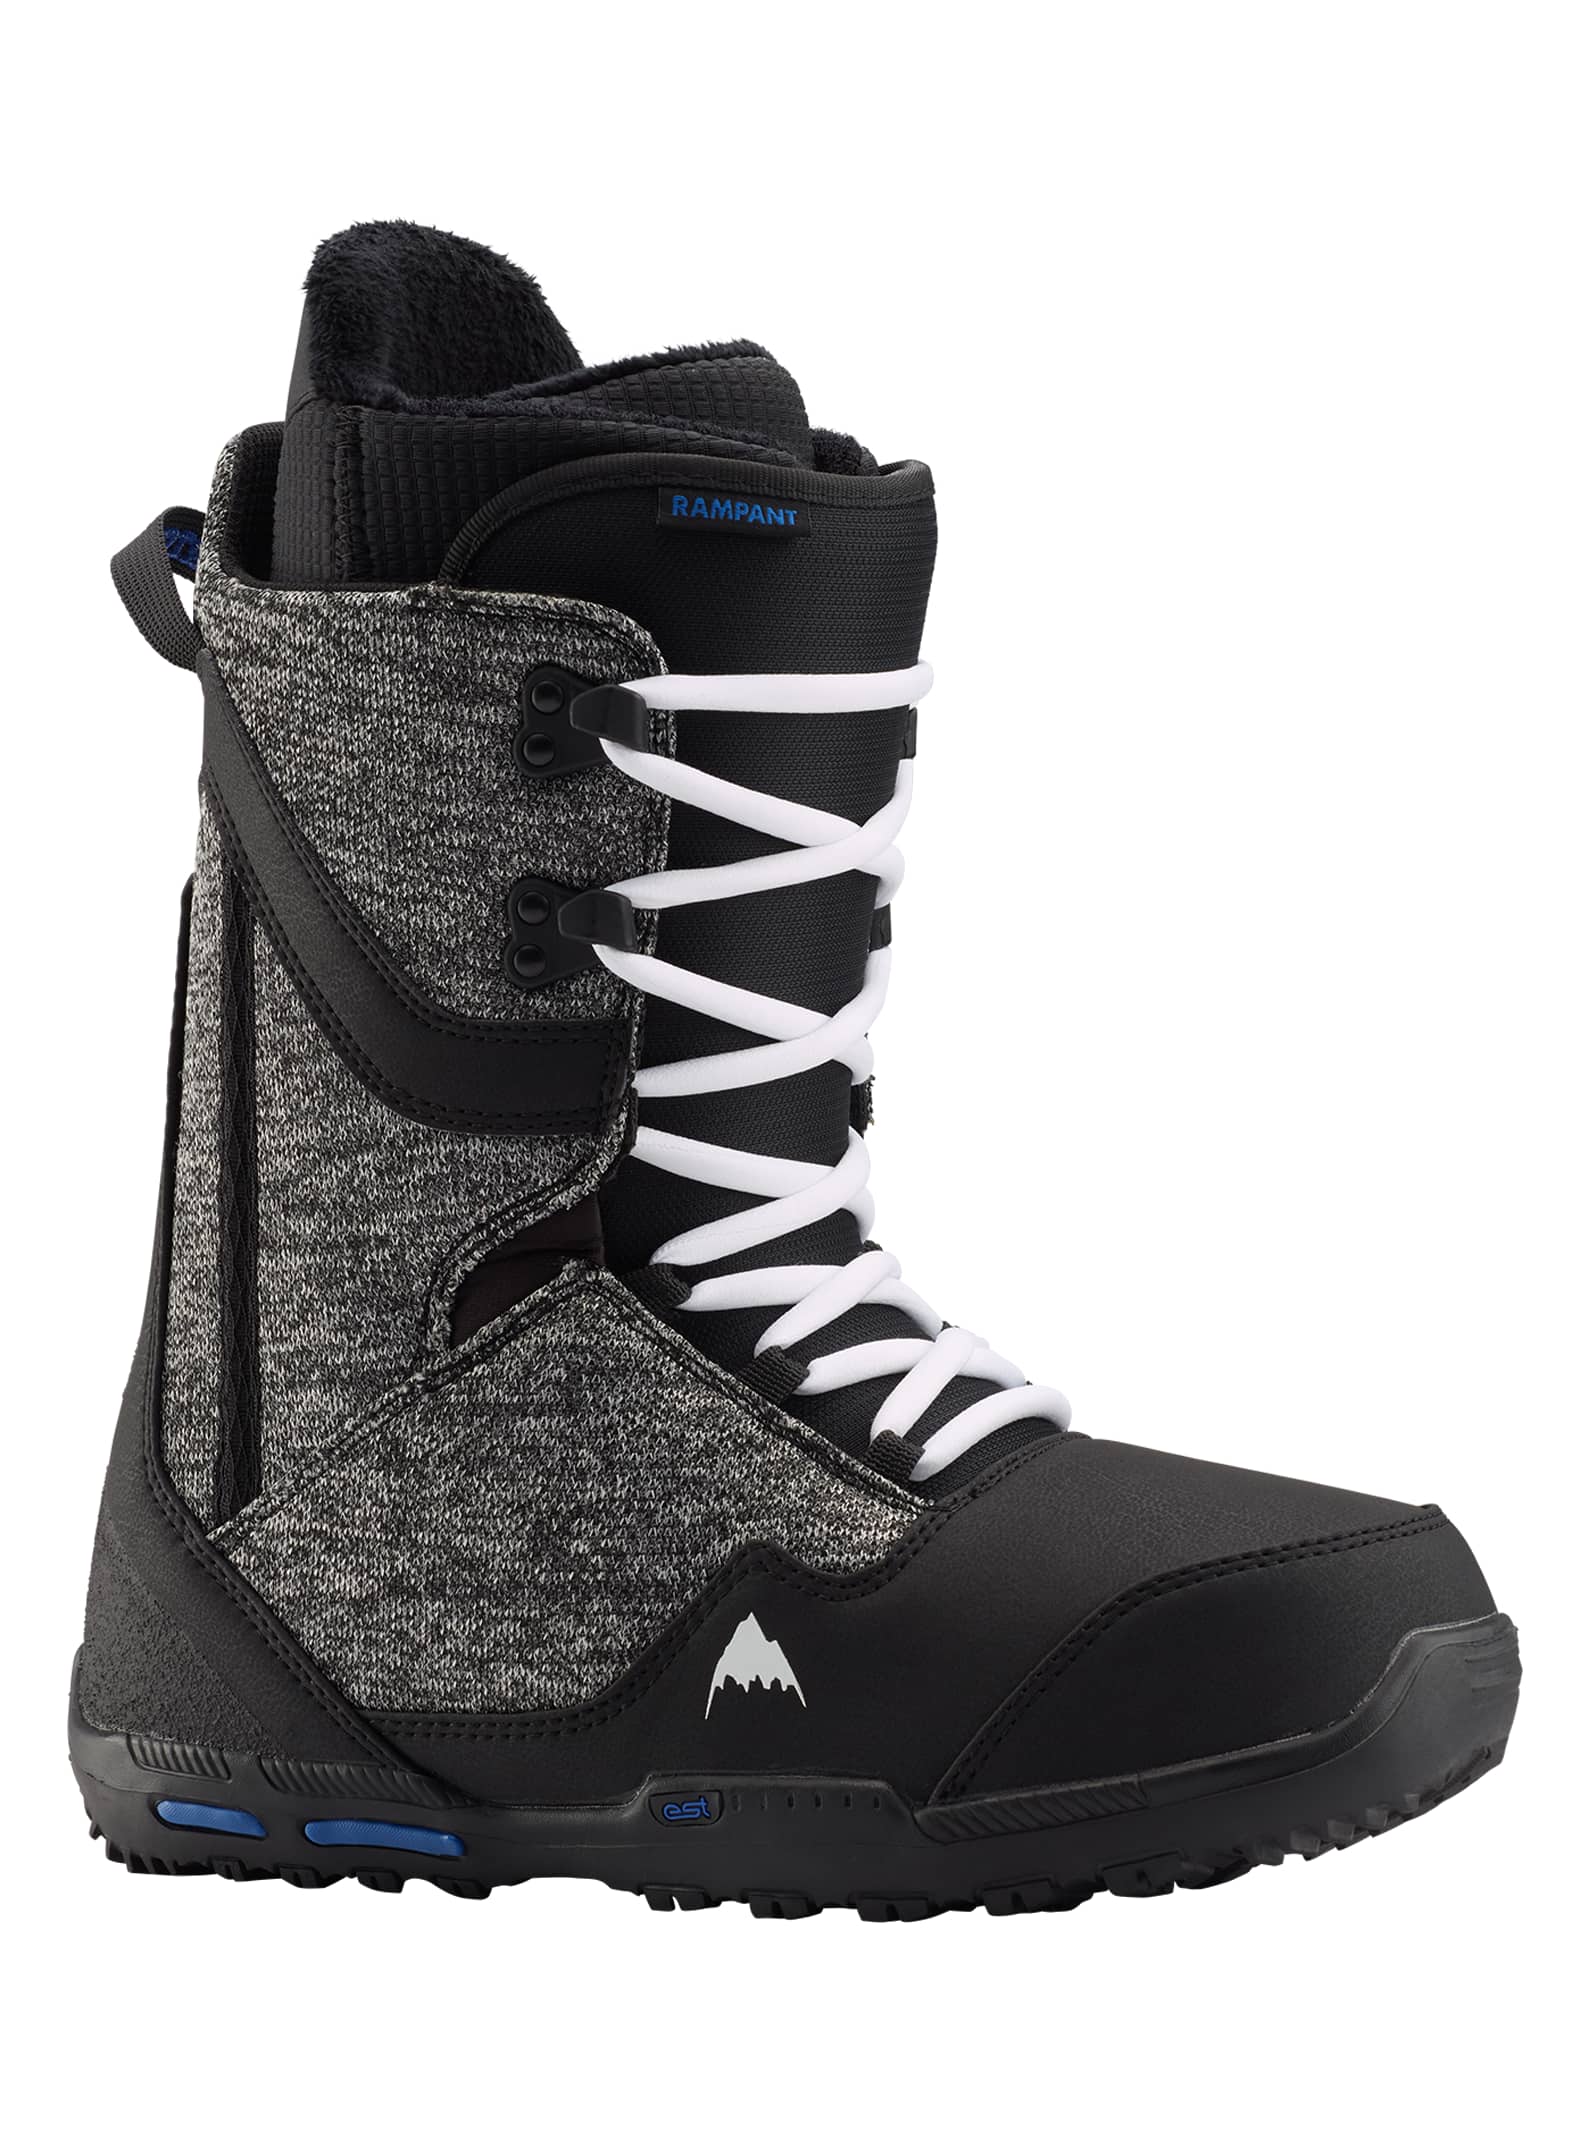 Burton - Boots de snowboard Rampant homme, Black / Blue, 10